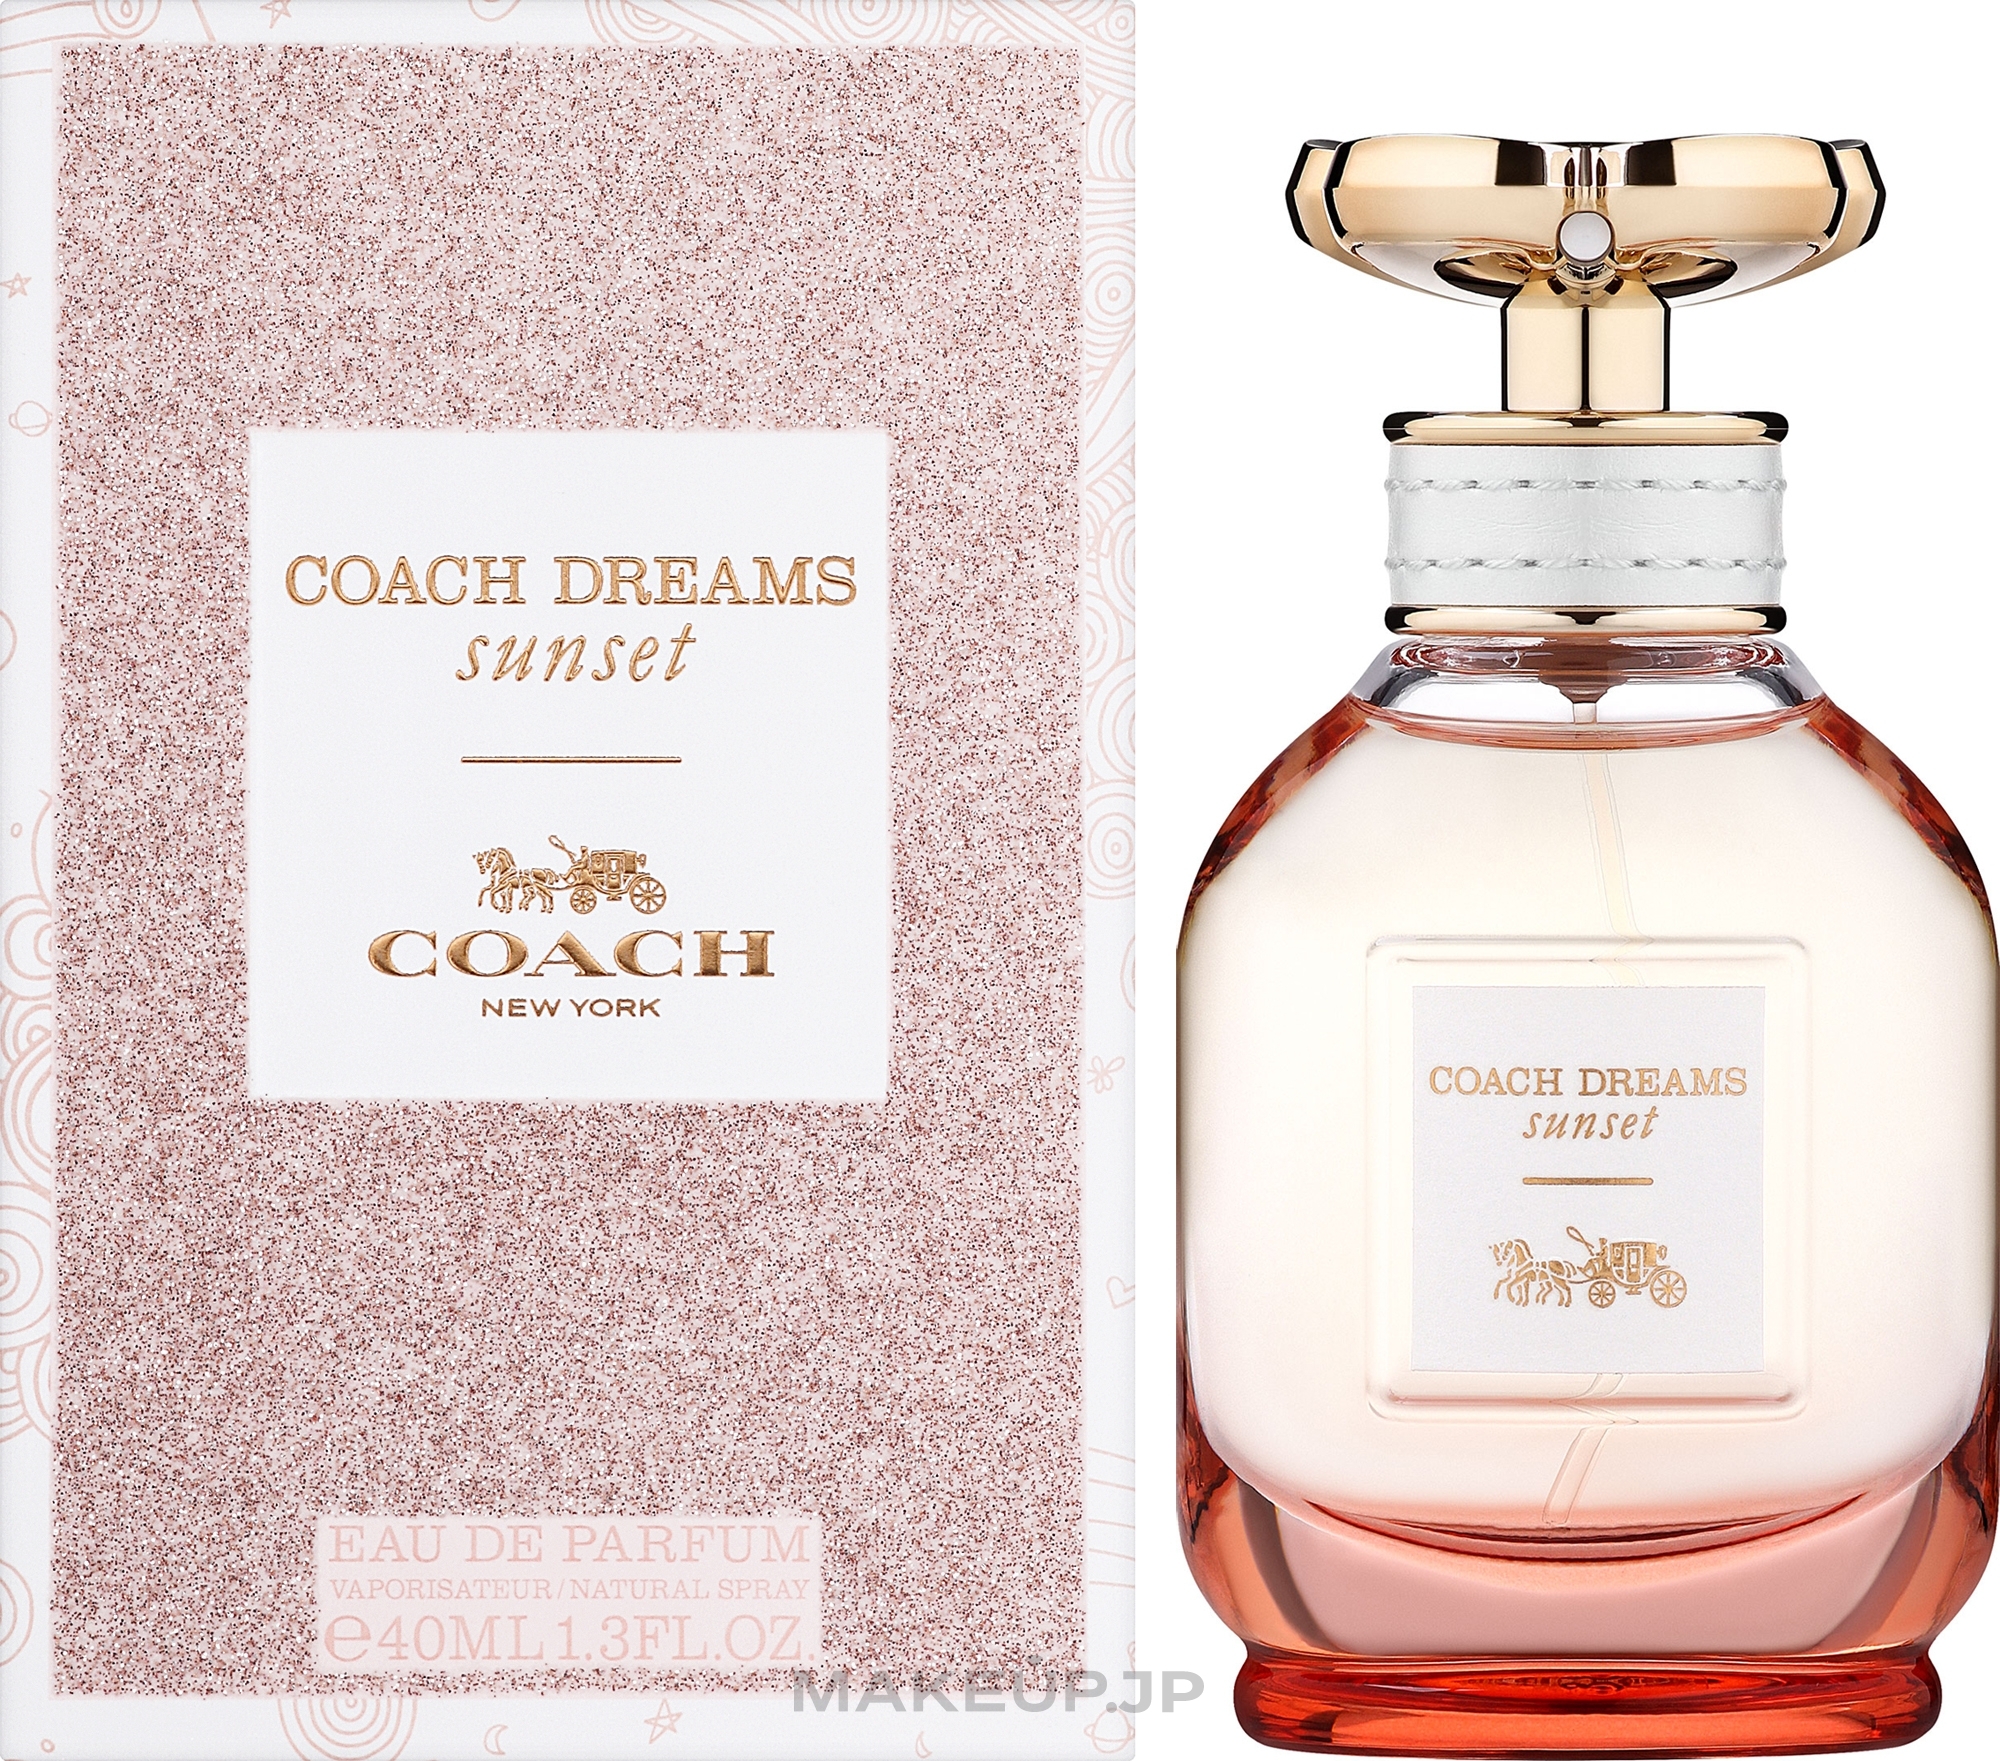 Coach Dreams Sunset - Eau de Parfum — photo 40 ml